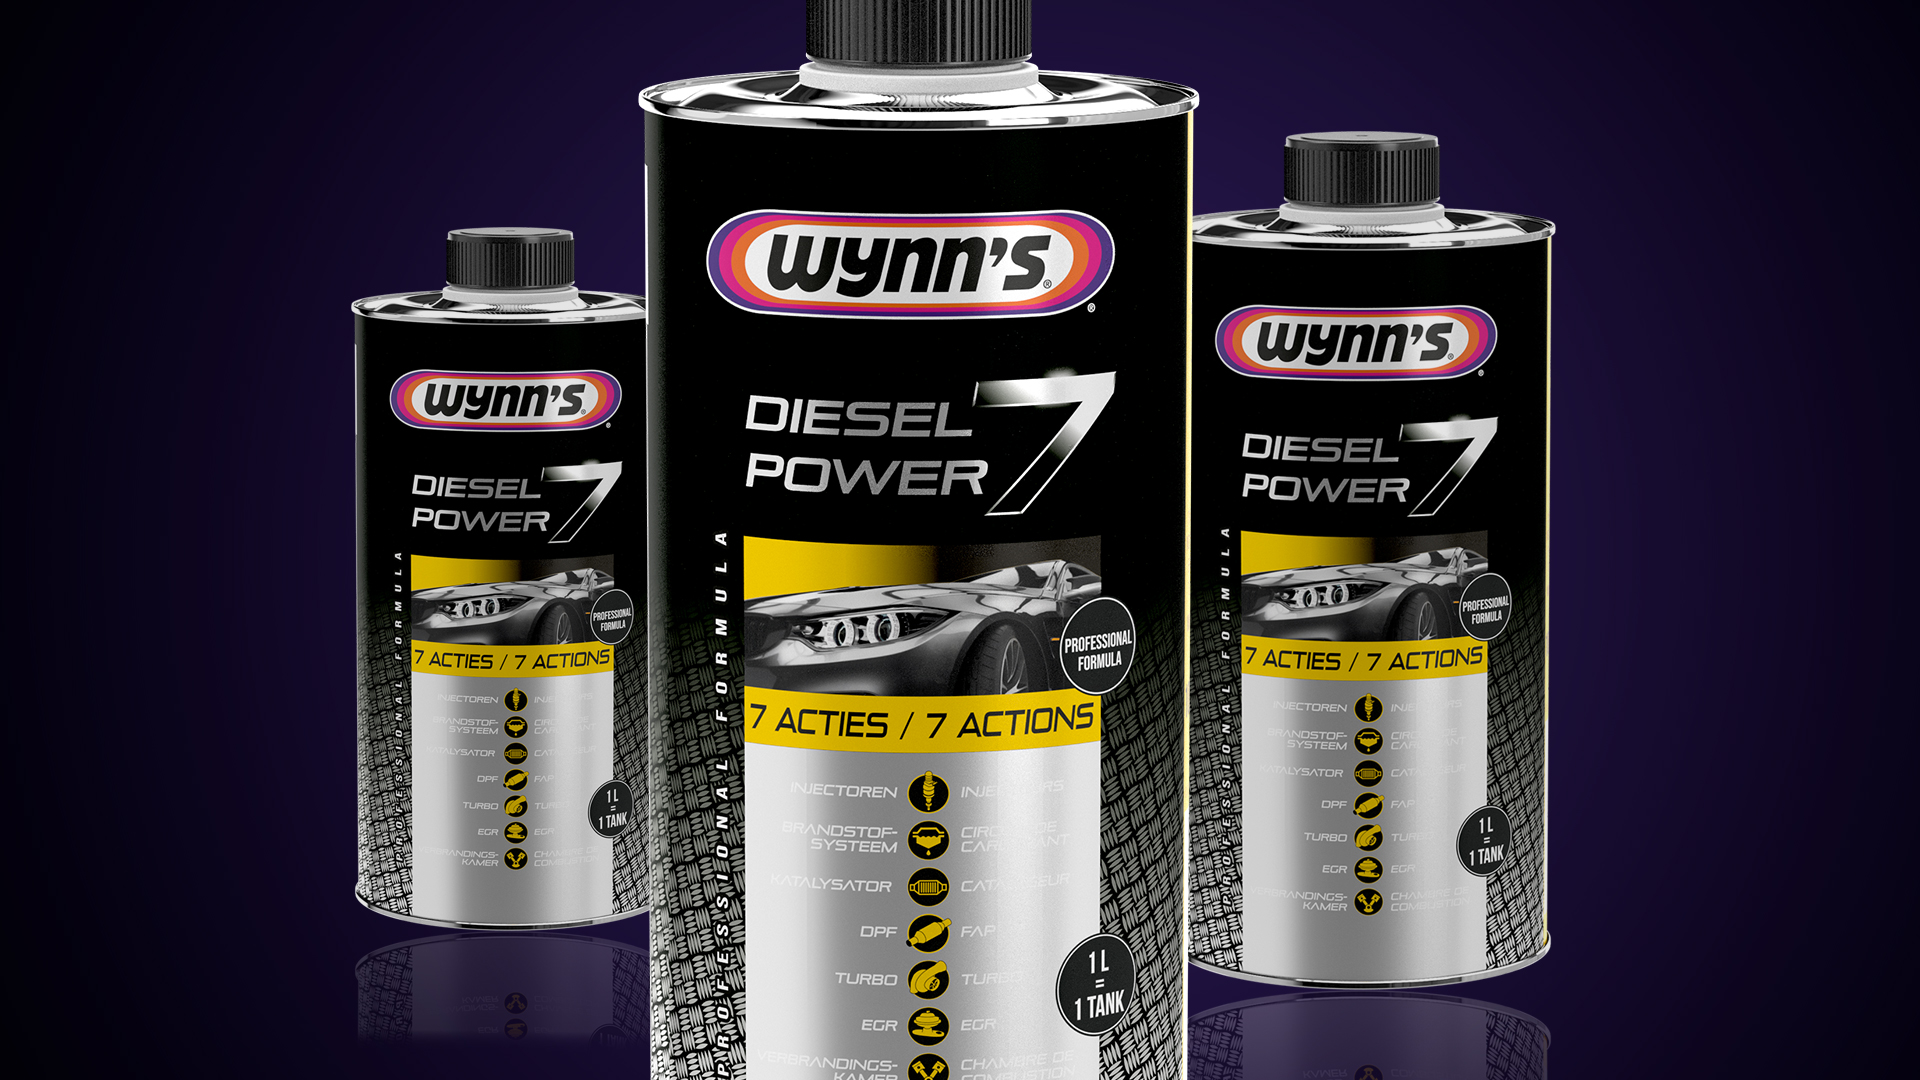 Power Diesel - Wynns USA